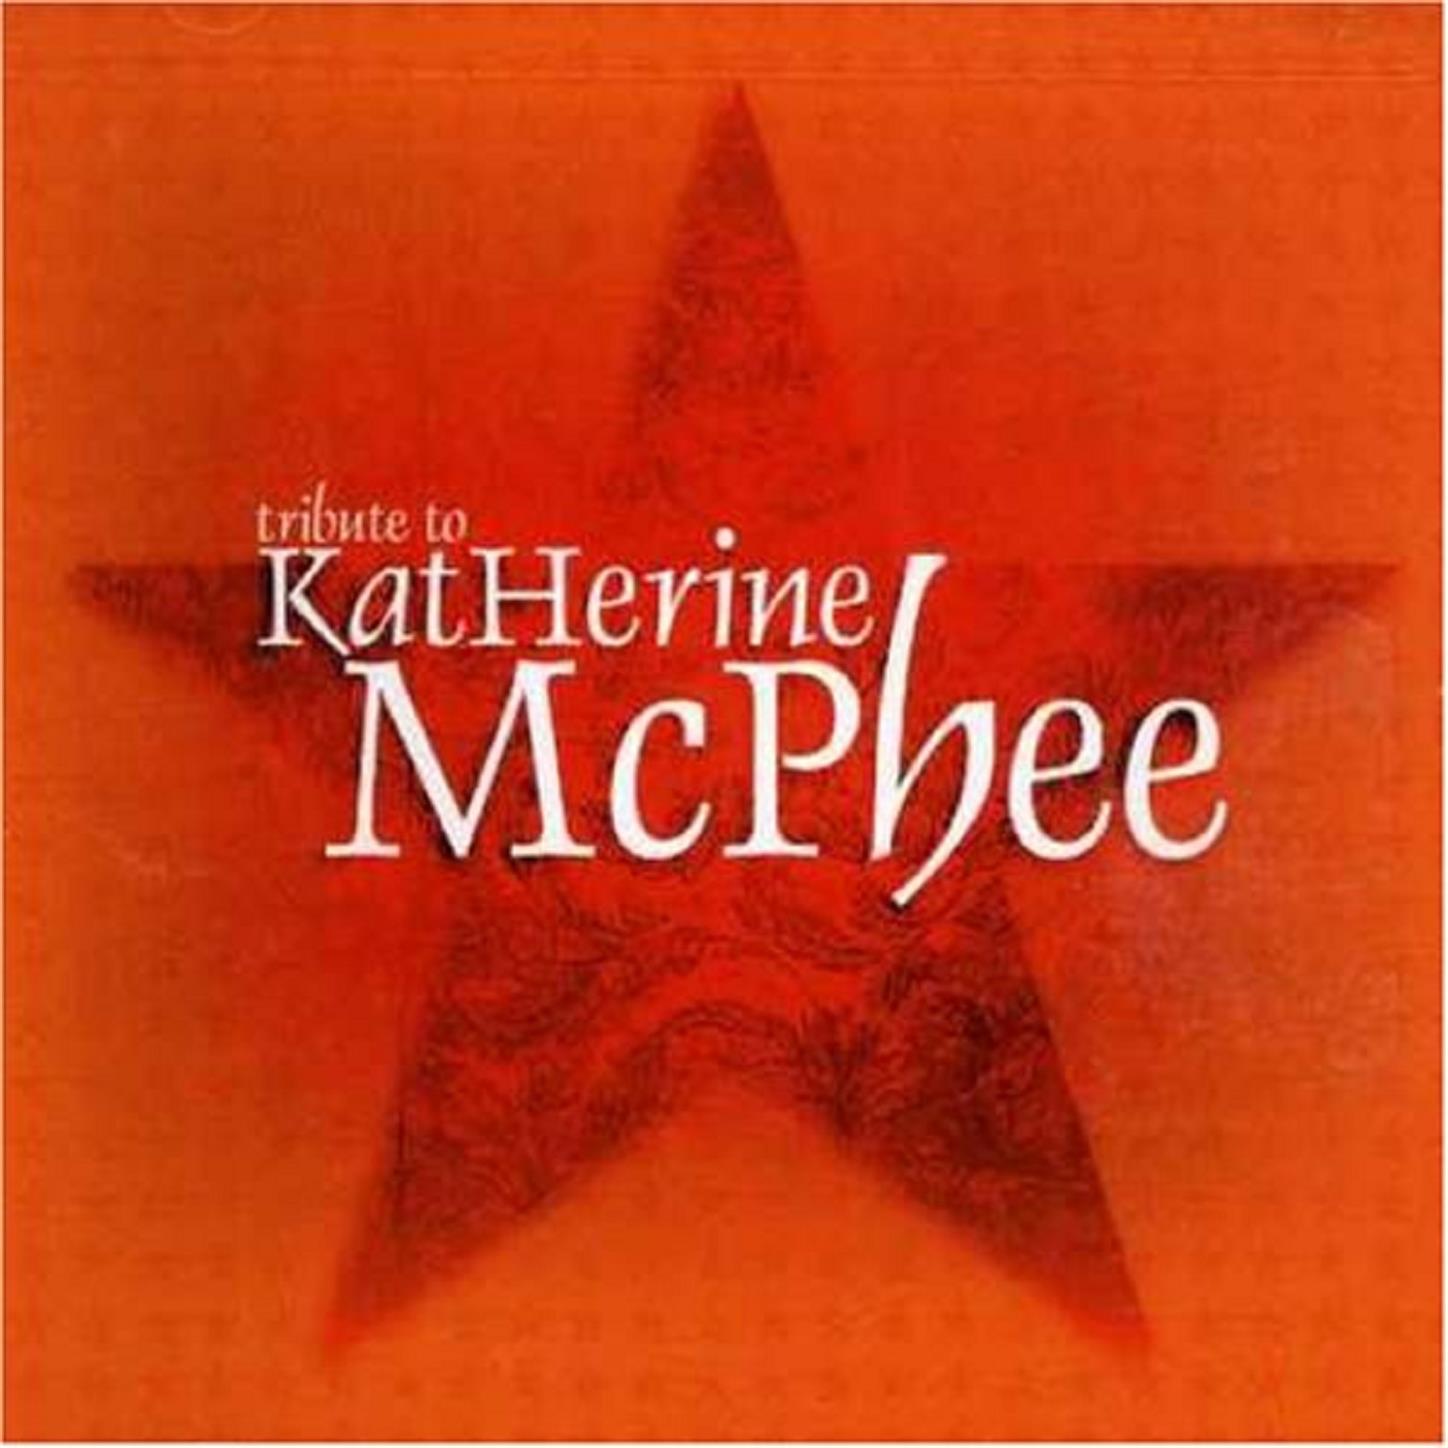 A Tribute To Katharine Mcphee